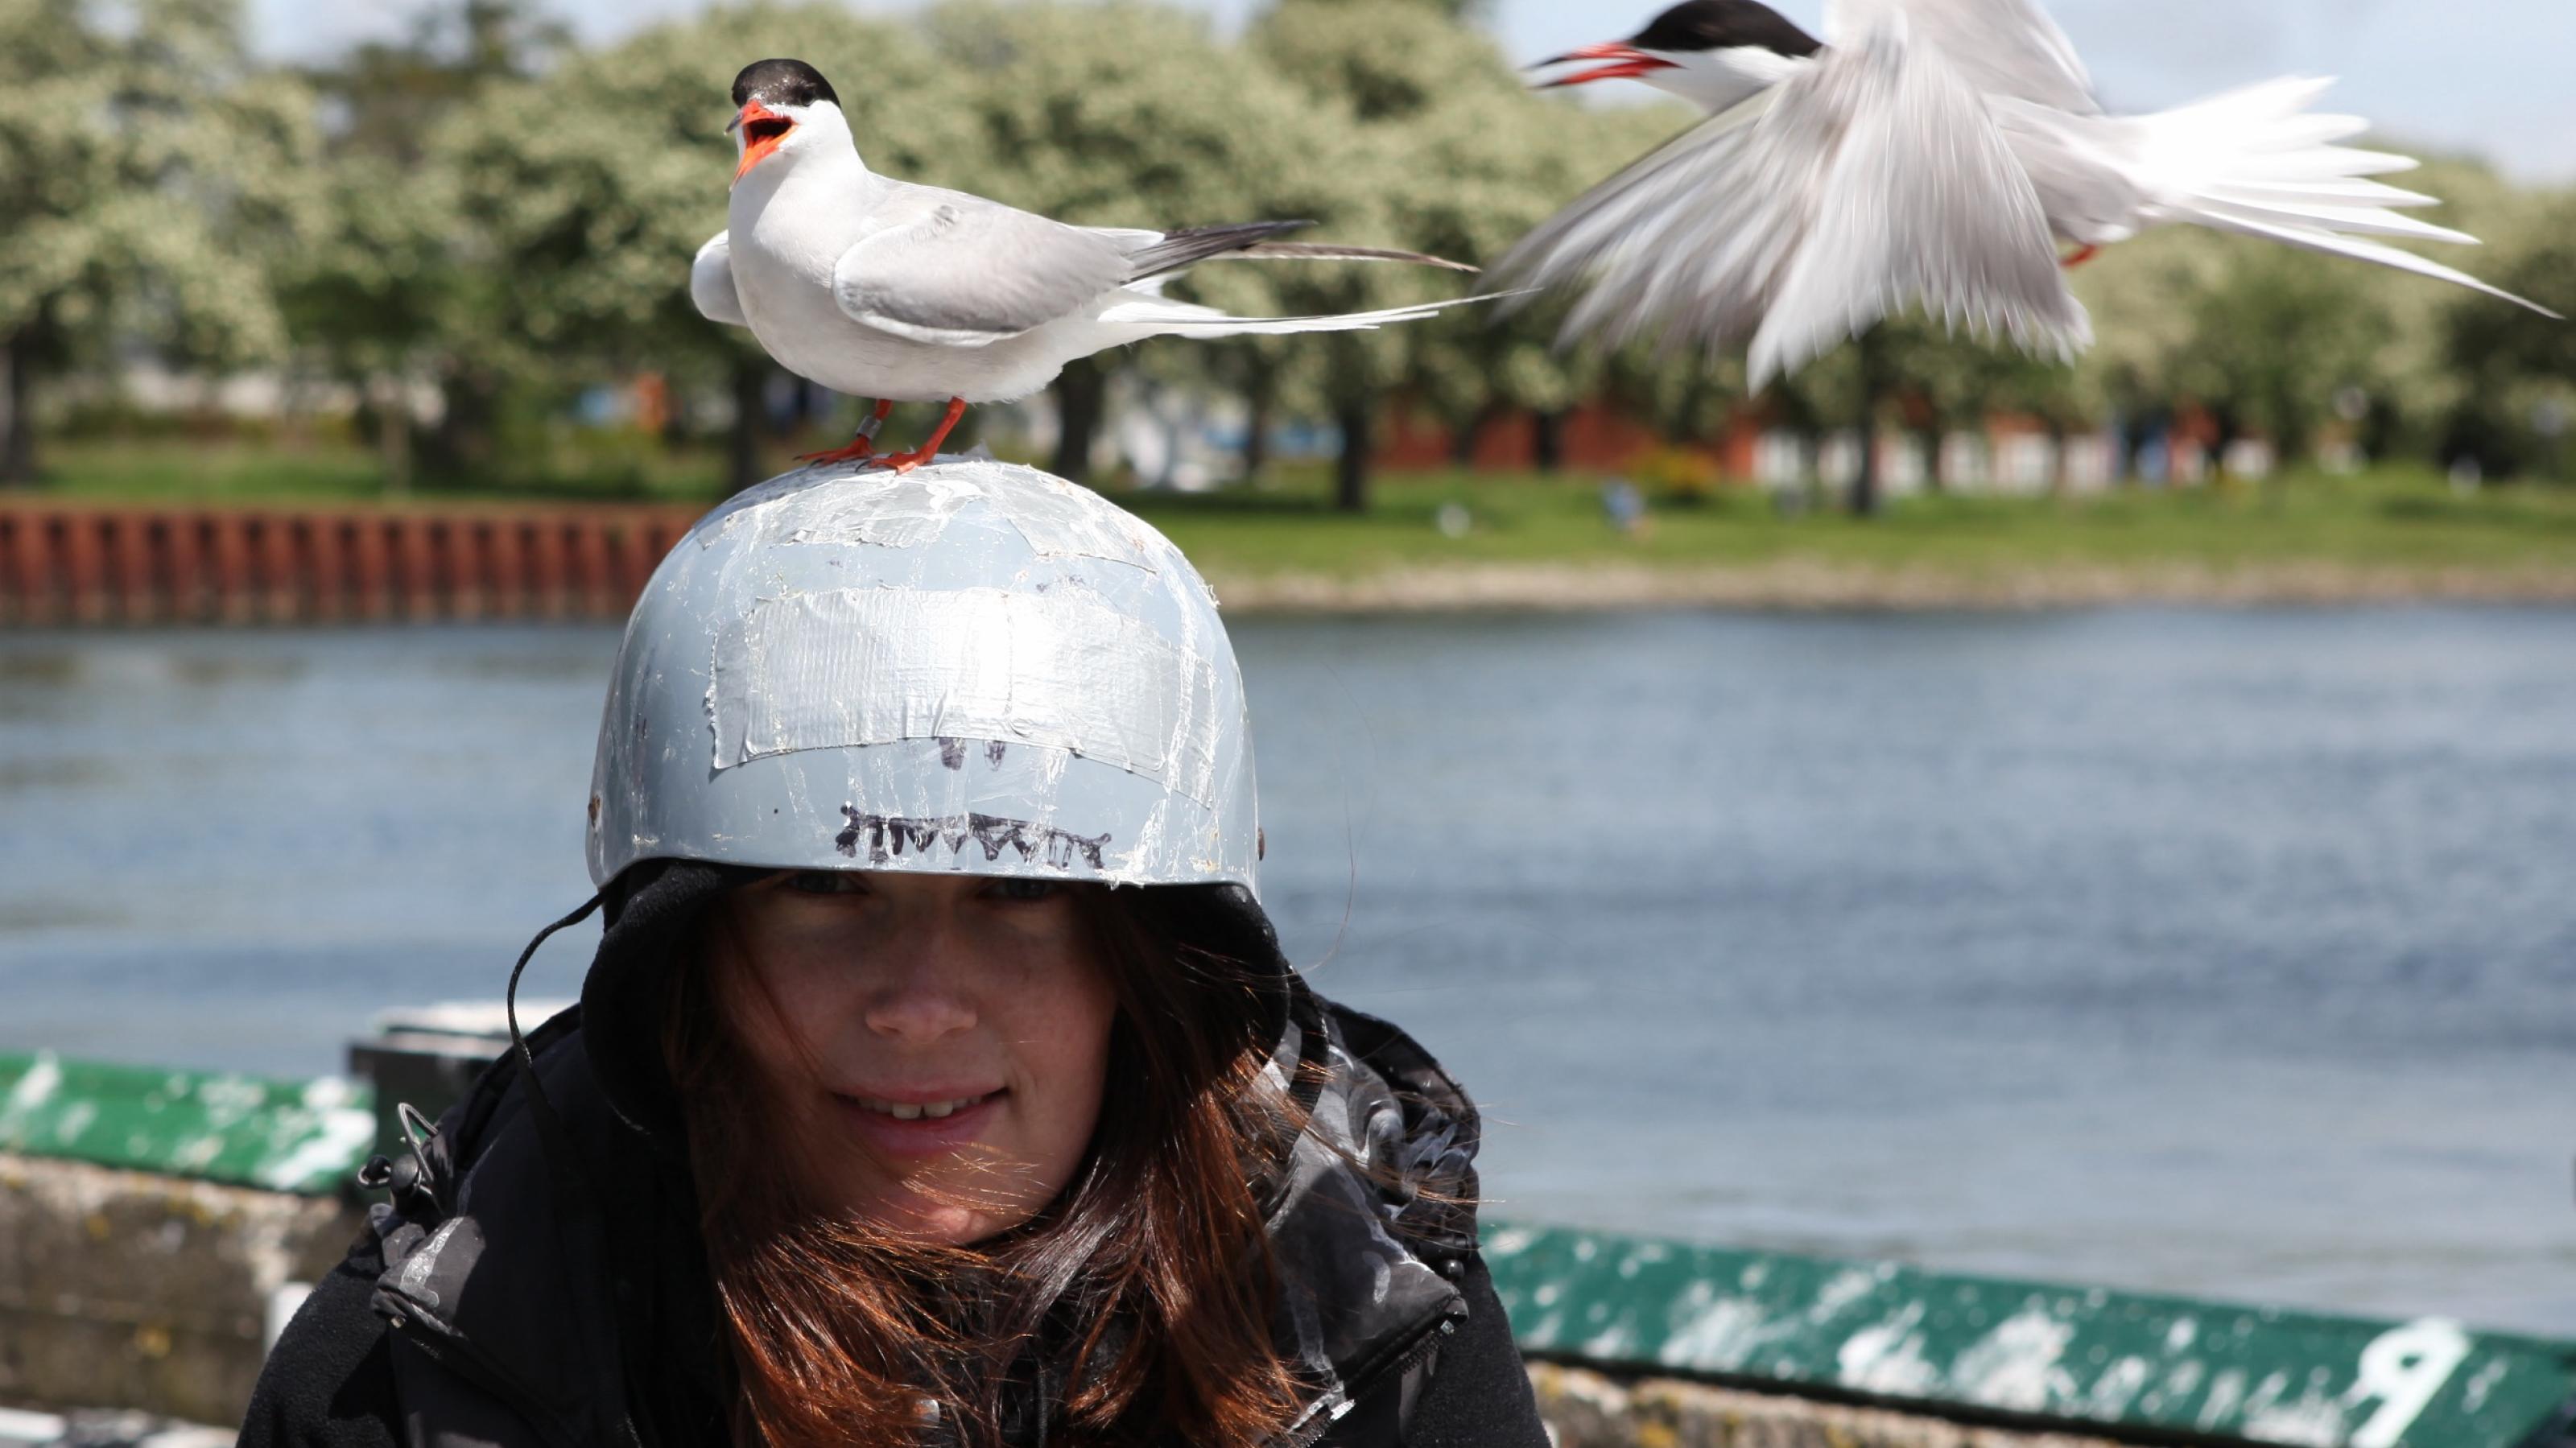 Junge Frau mit einem weißen Helm auf dem Kopf, auf dem zwei Flussseeschwalben sitzen. Die Vögel haben weiße Federn, einen teils schwarzen Kopf und einen roten Schnabel. Sie sind länglich und sehen elegant aus.